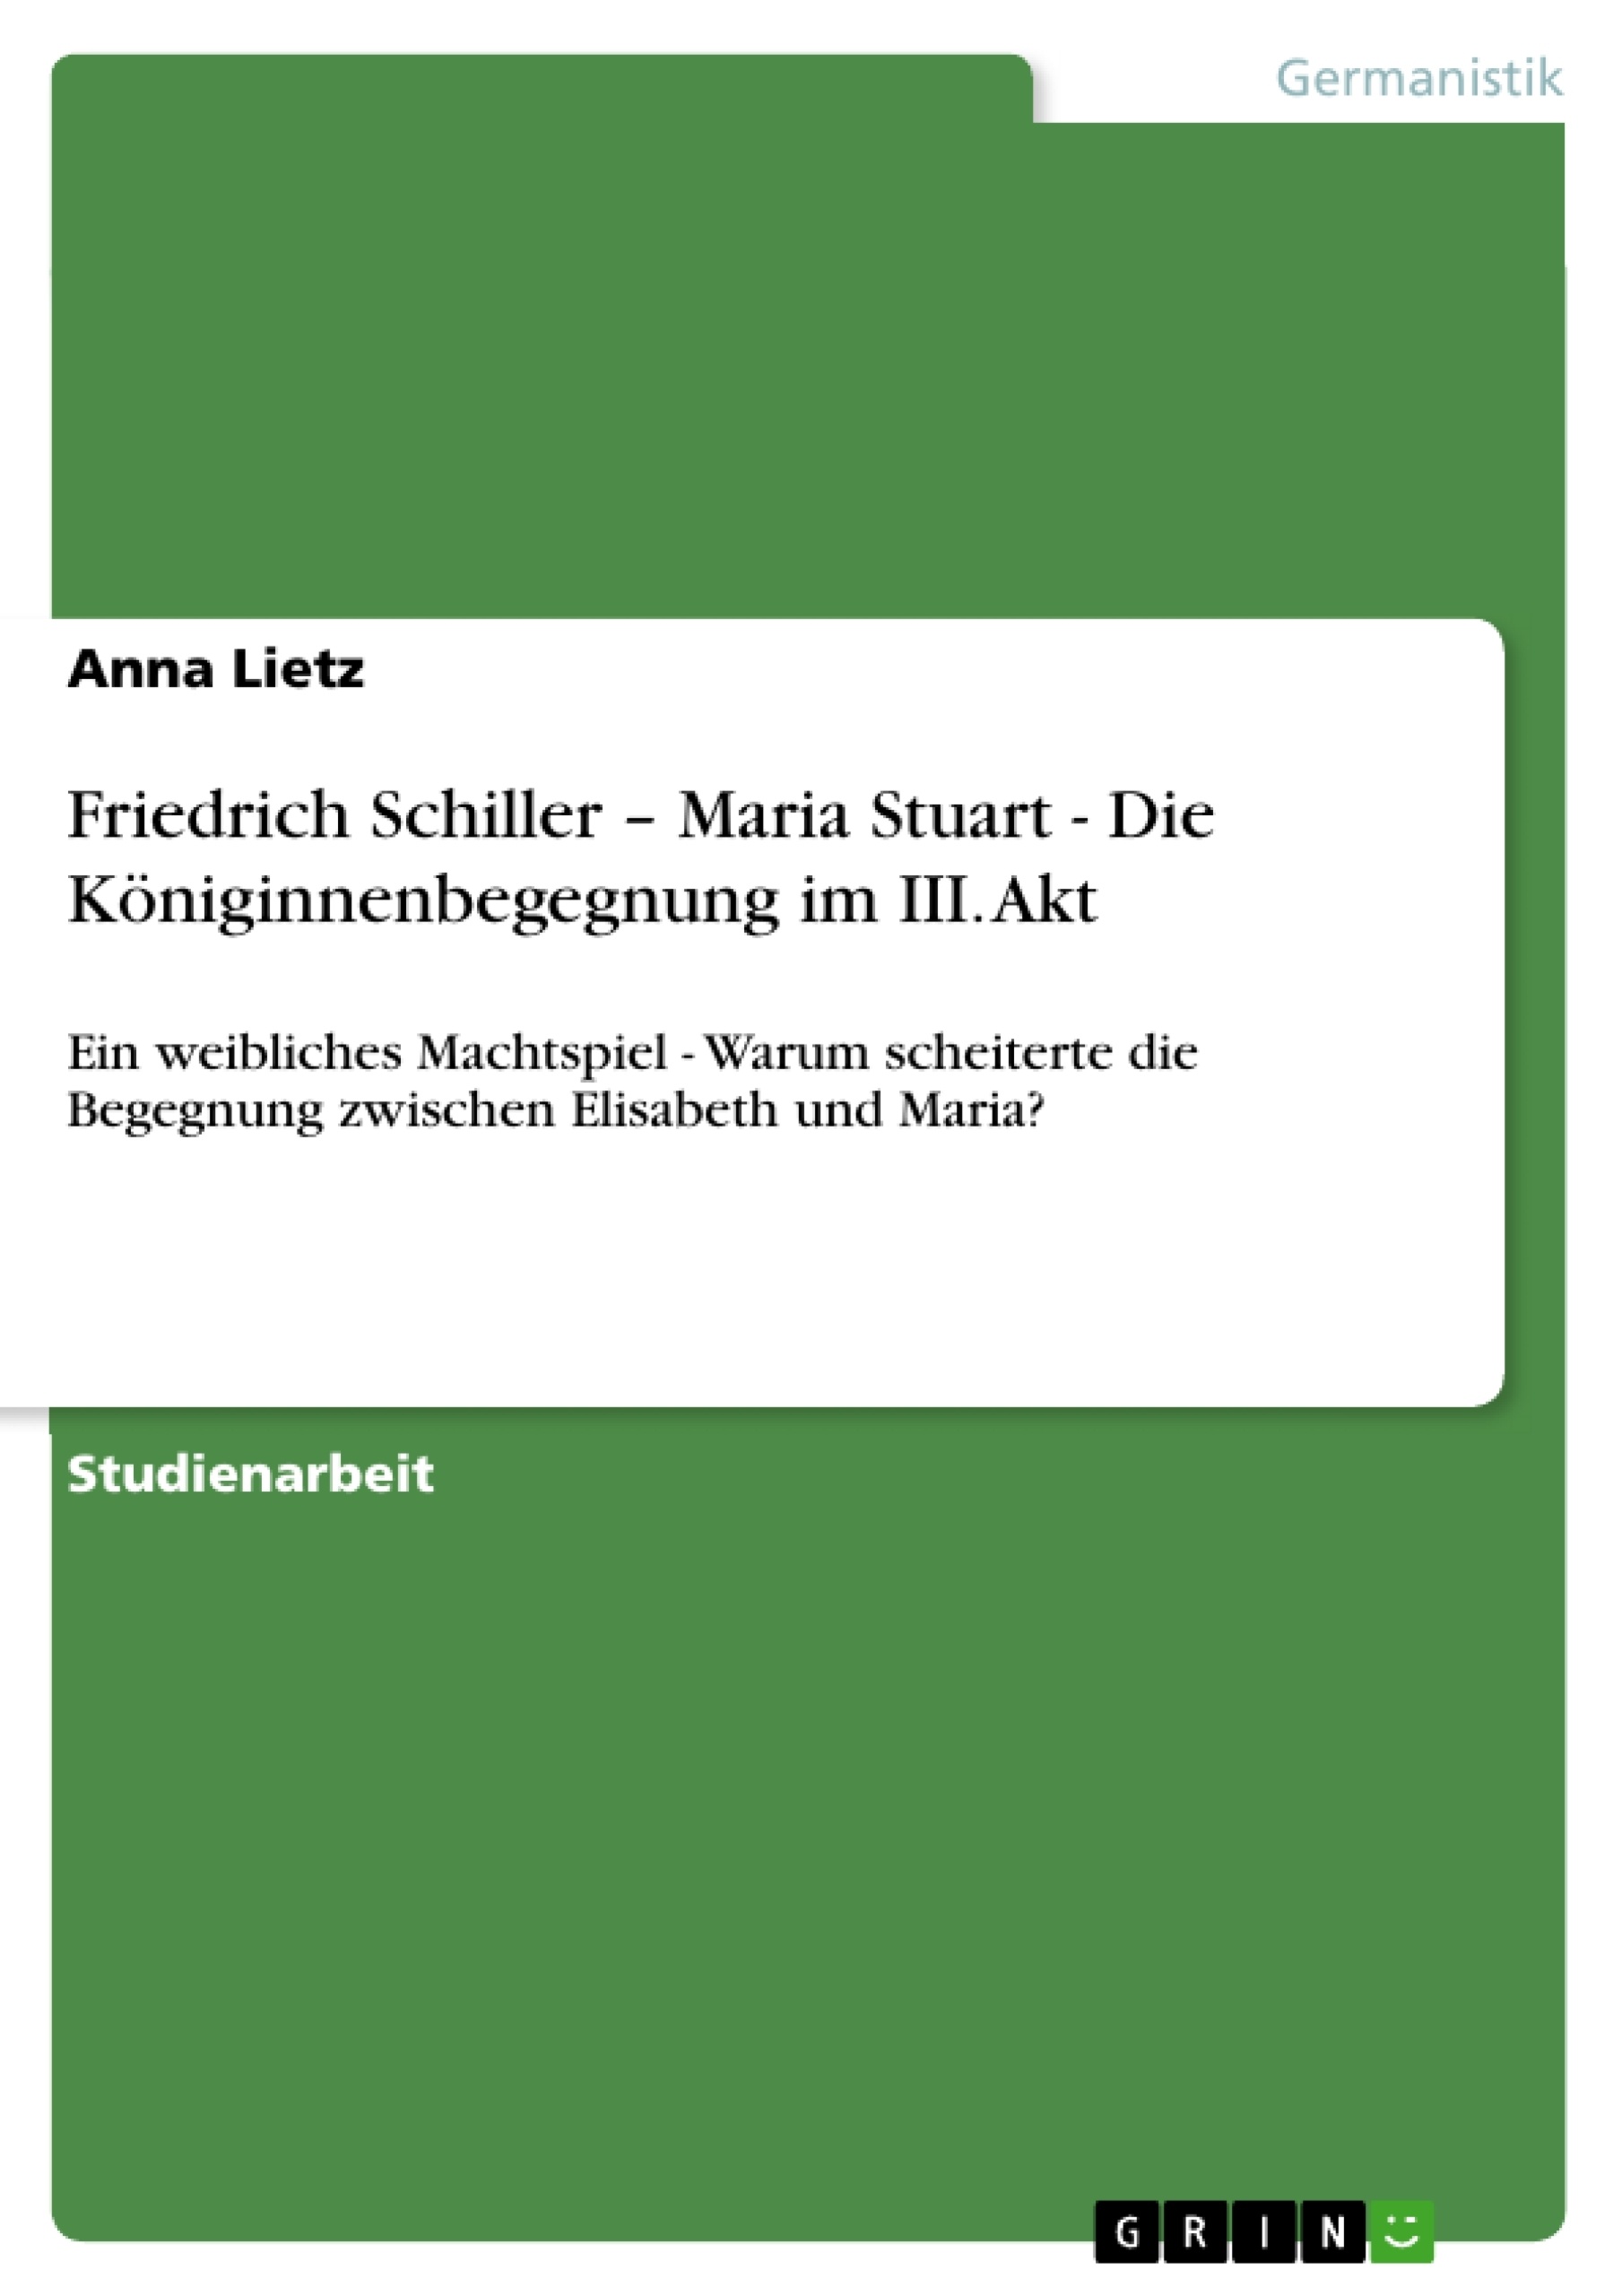 Título: Friedrich Schiller – Maria Stuart - Die Königinnenbegegnung im III. Akt